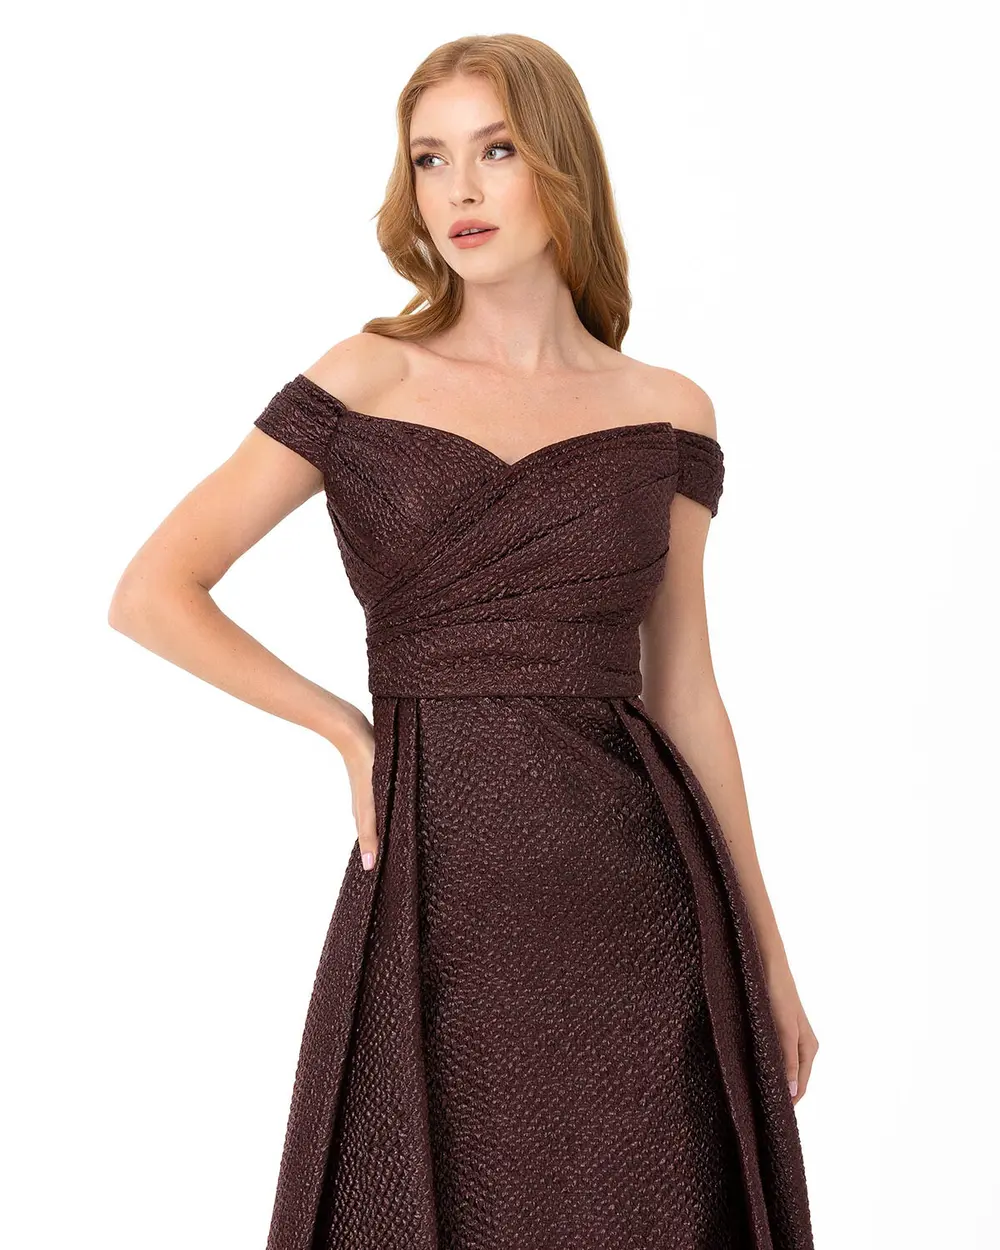  A Cut Off Shoulder Jacquard Evening Dress